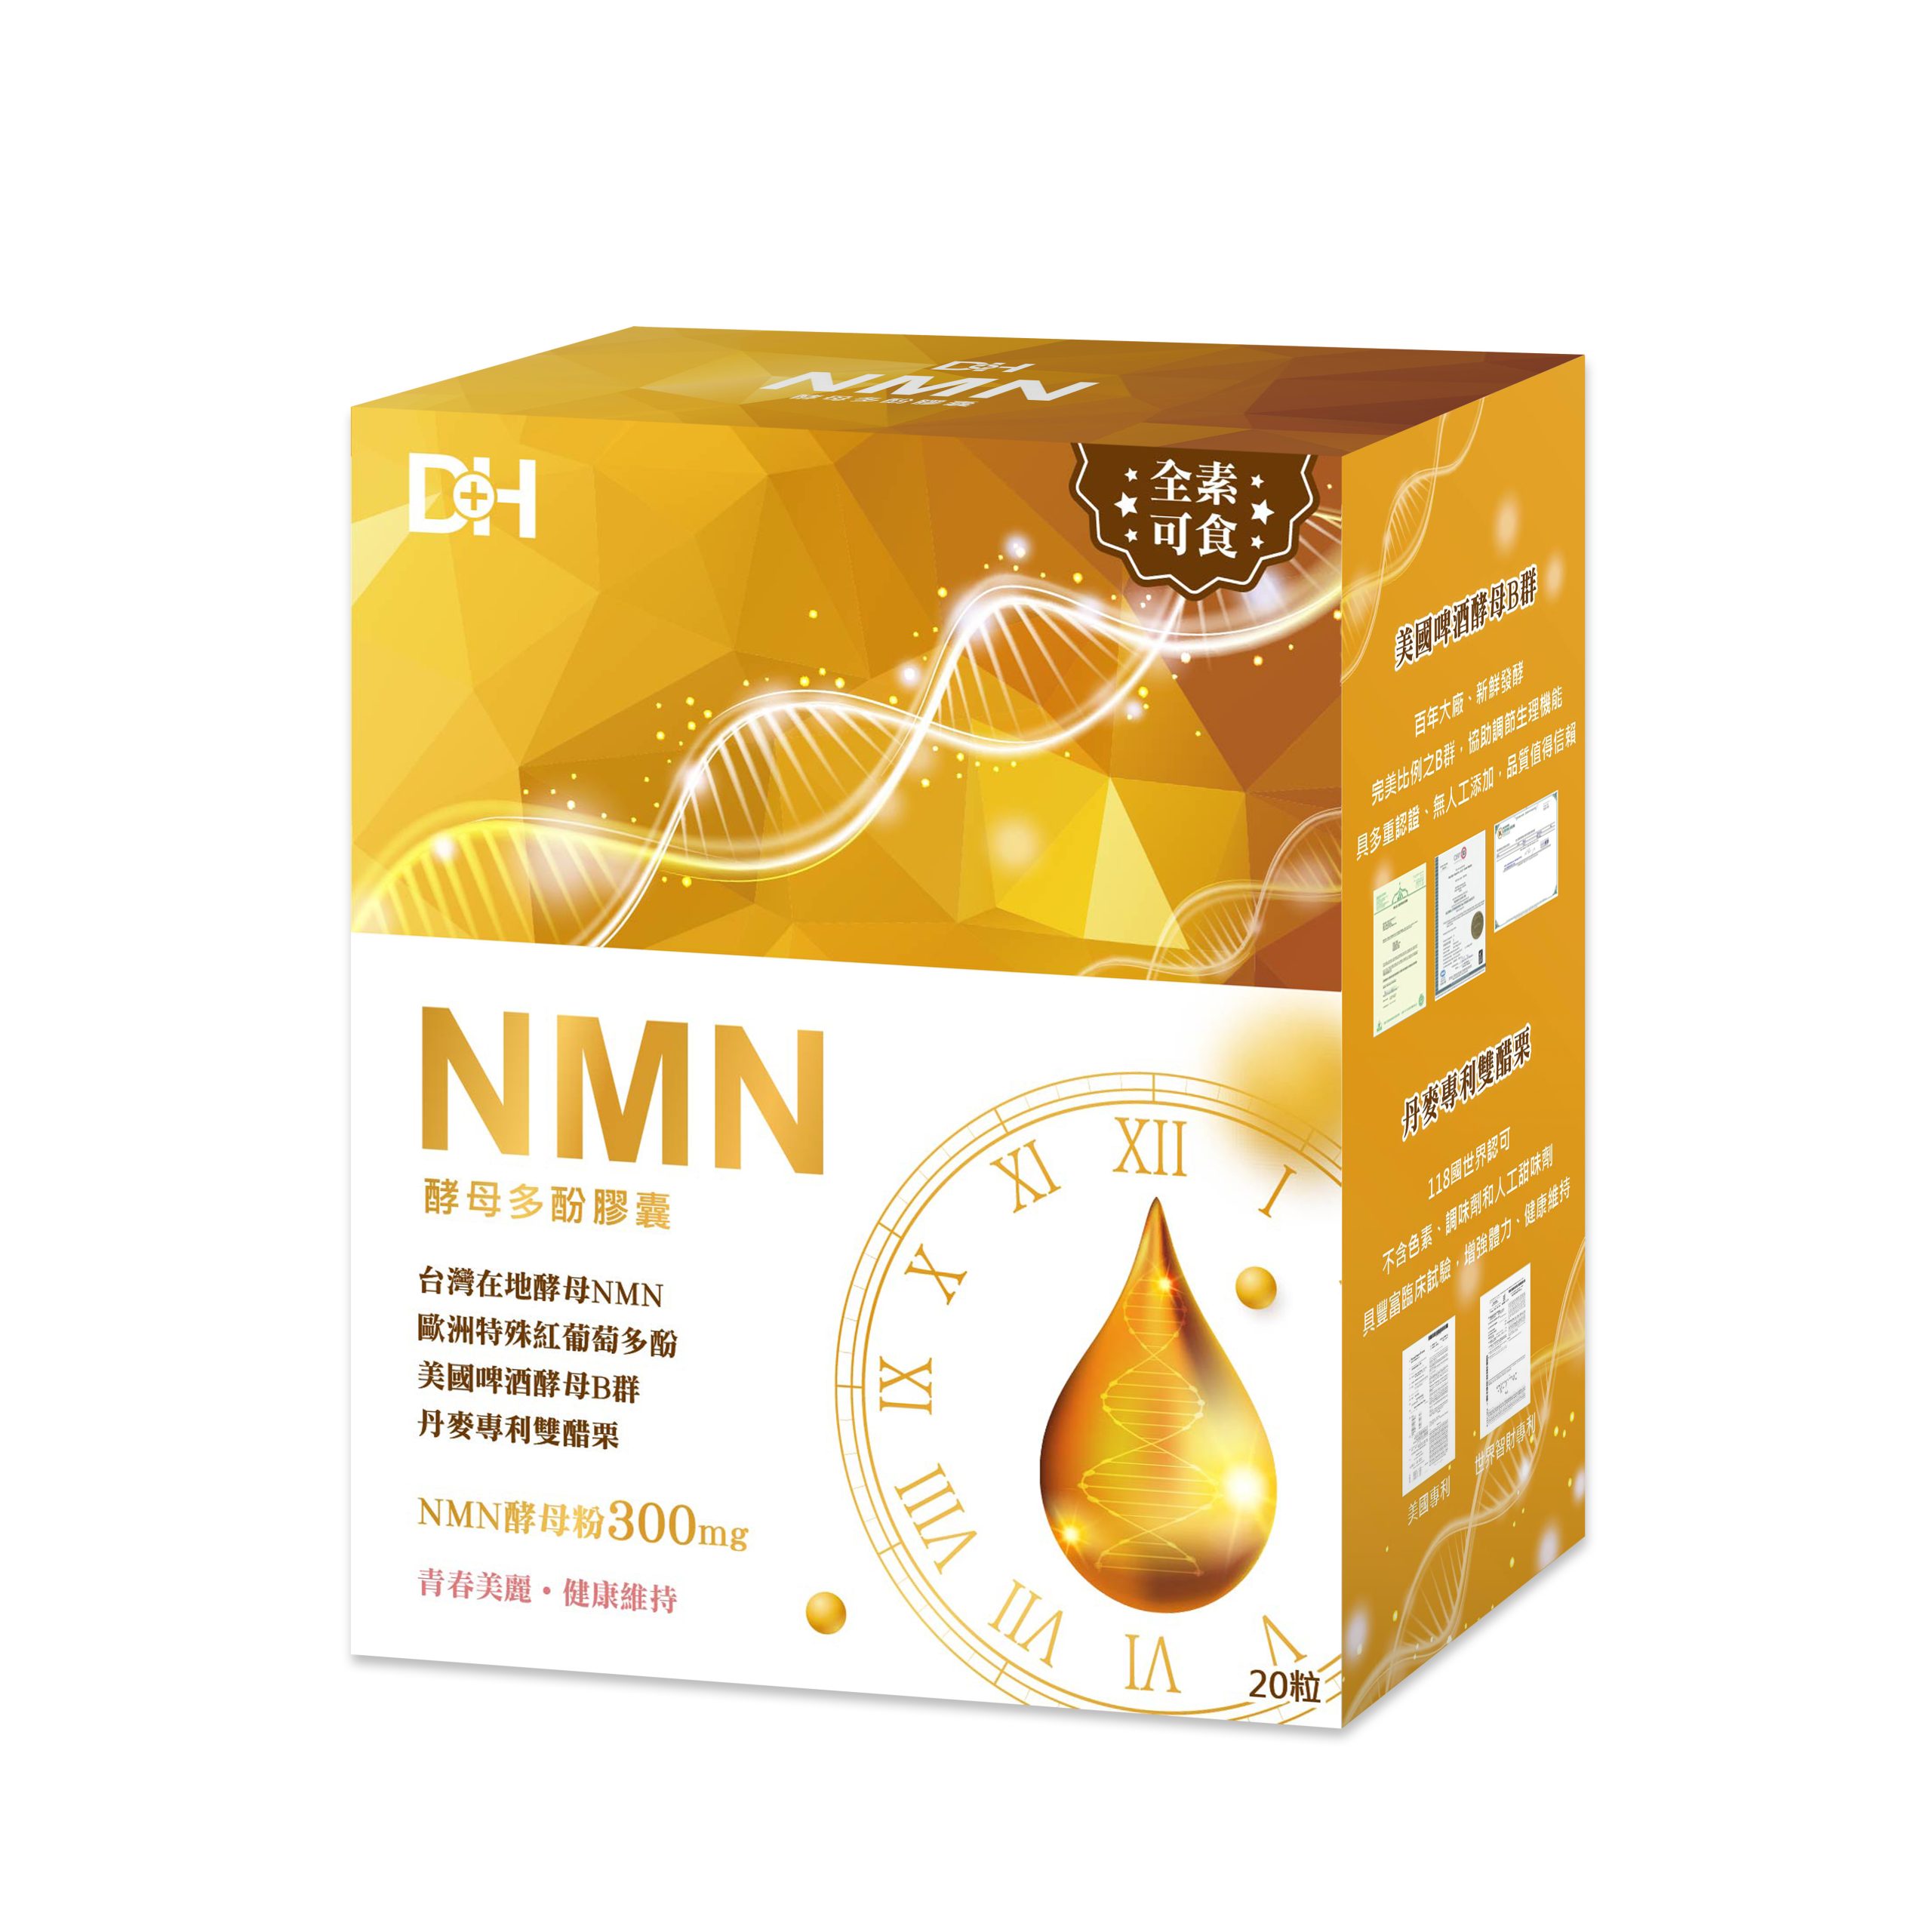 DH恆隆生技/評價/NMN酵母多酚/台灣少數合法/天然來源/NMN含量高達300mg/全素/重啟青春/喚醒最好的自己/諾貝爾學者、醫學期刊認可成分